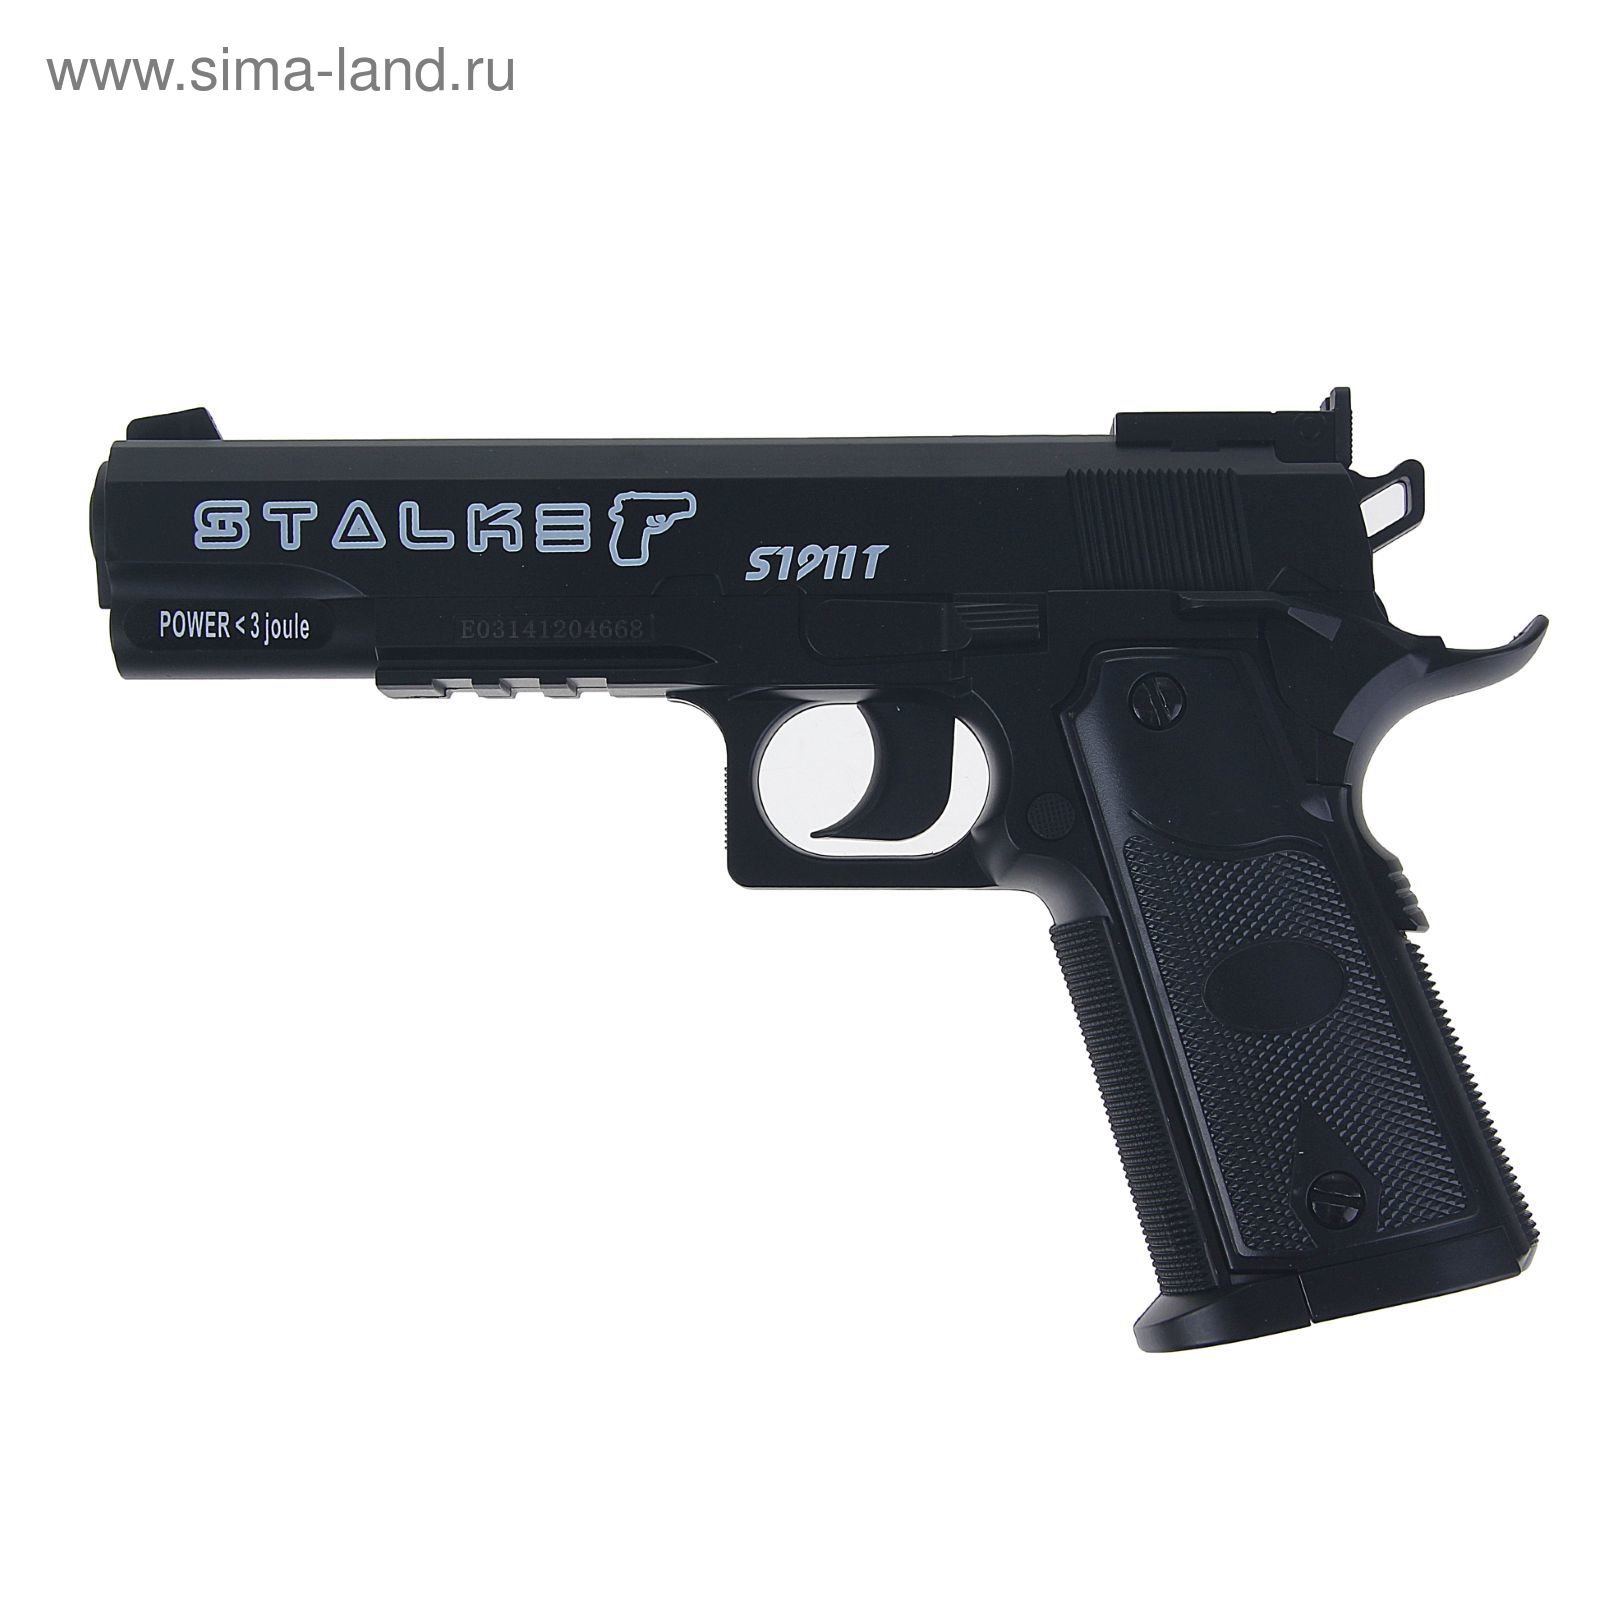 Пистолет пневм. Stalker S1911T, кал.4,5мм, пластик, 120 м/с, черный